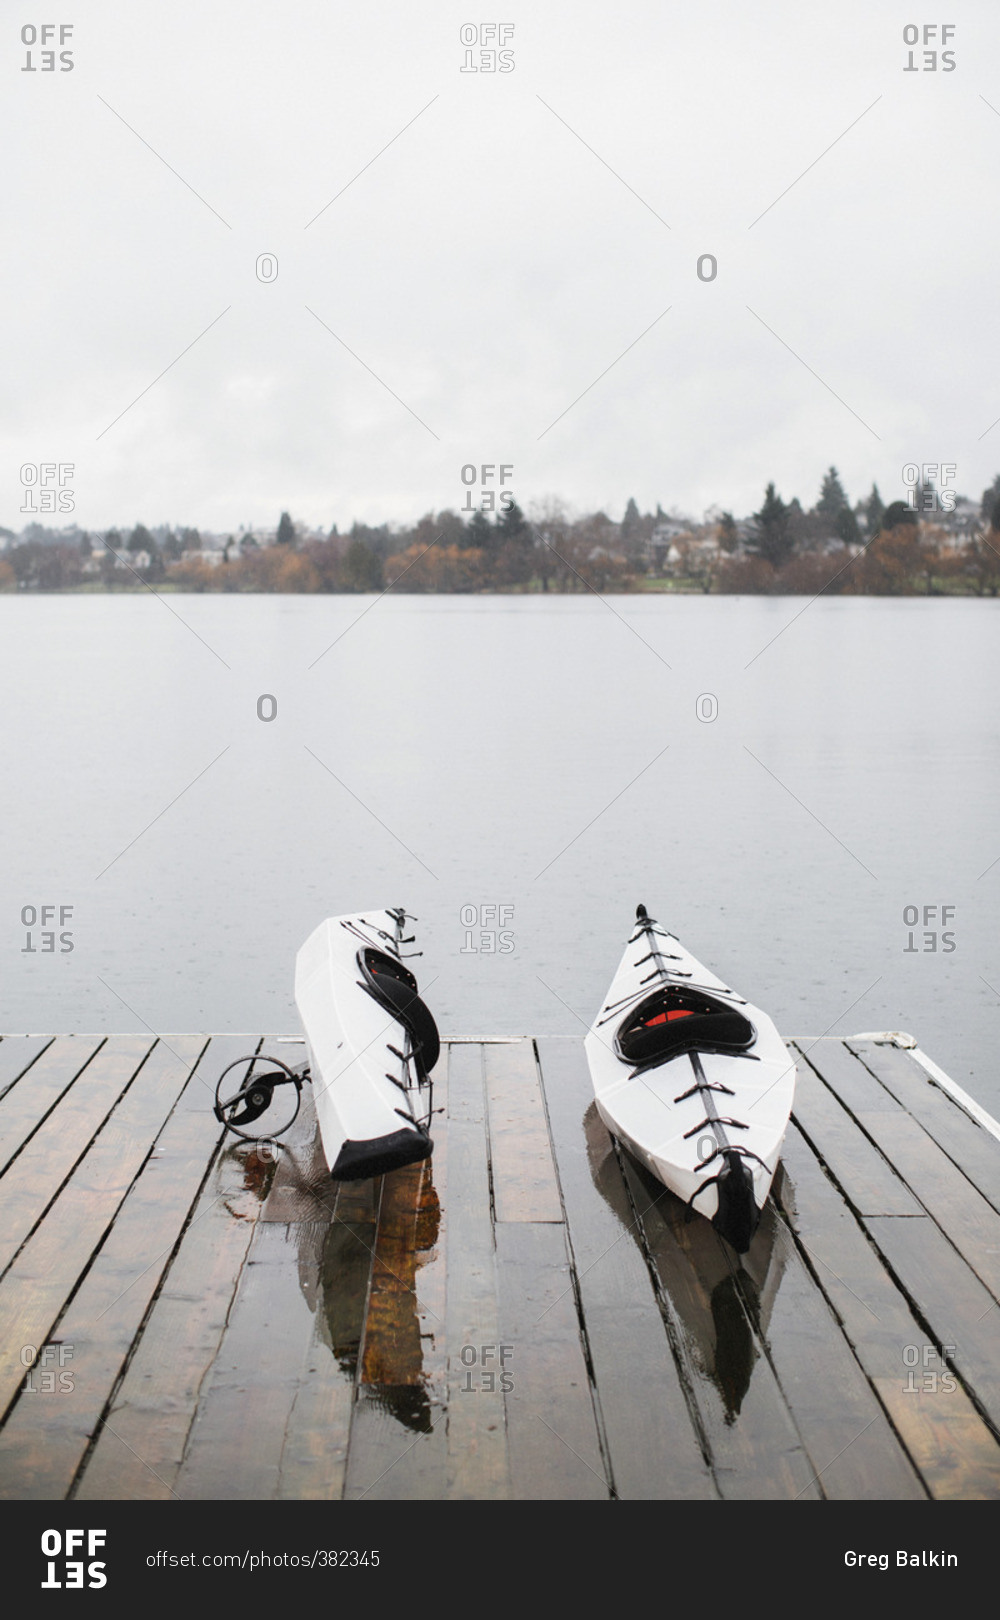 Kayaks on a lake dock